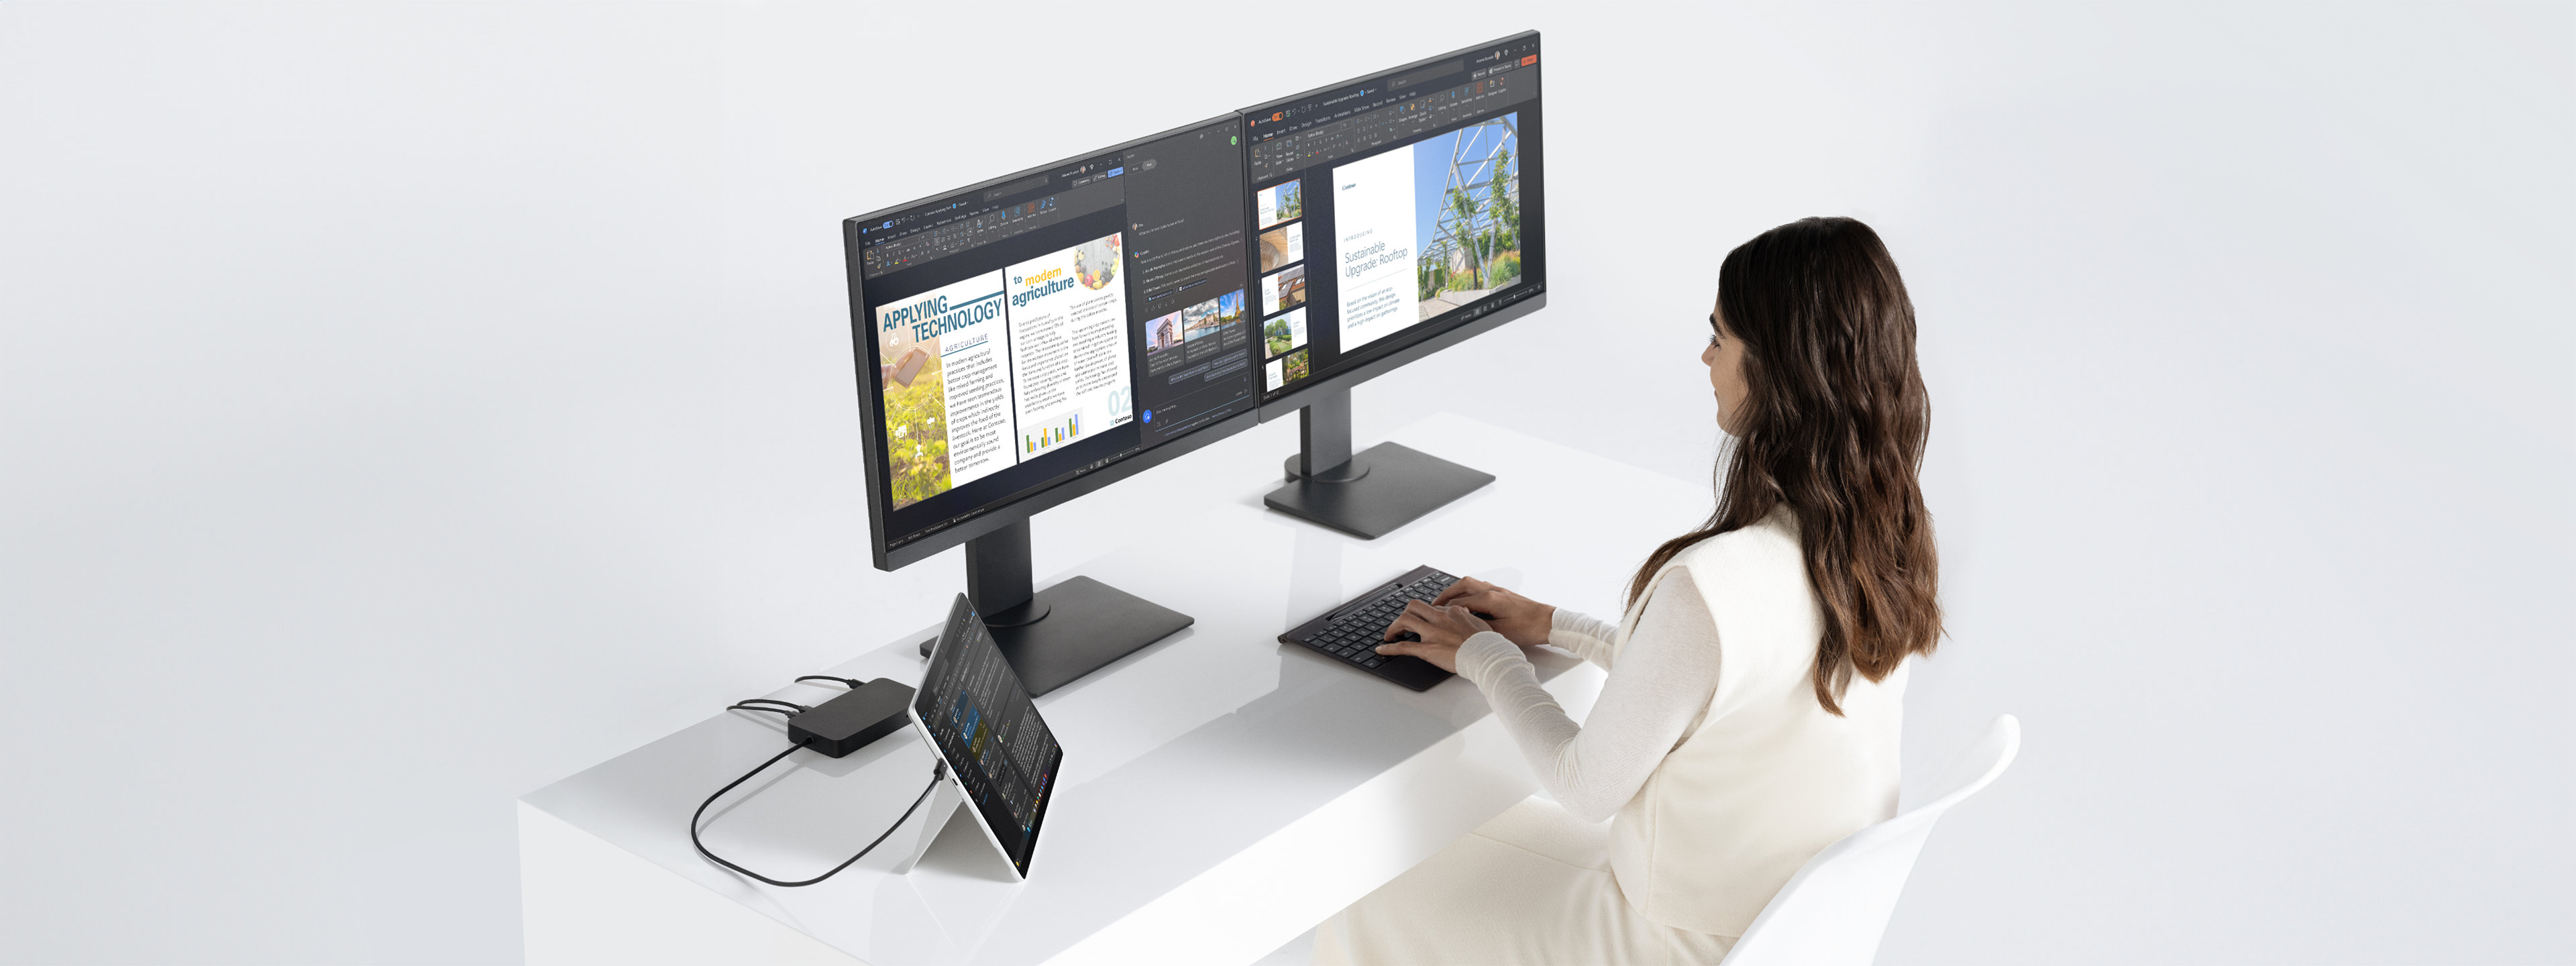 Een vrouw zit aan een bureau met een Surface Pro-apparaat in de kickstandmodus, verbonden met twee monitoren via een dock terwijl ze werkt.